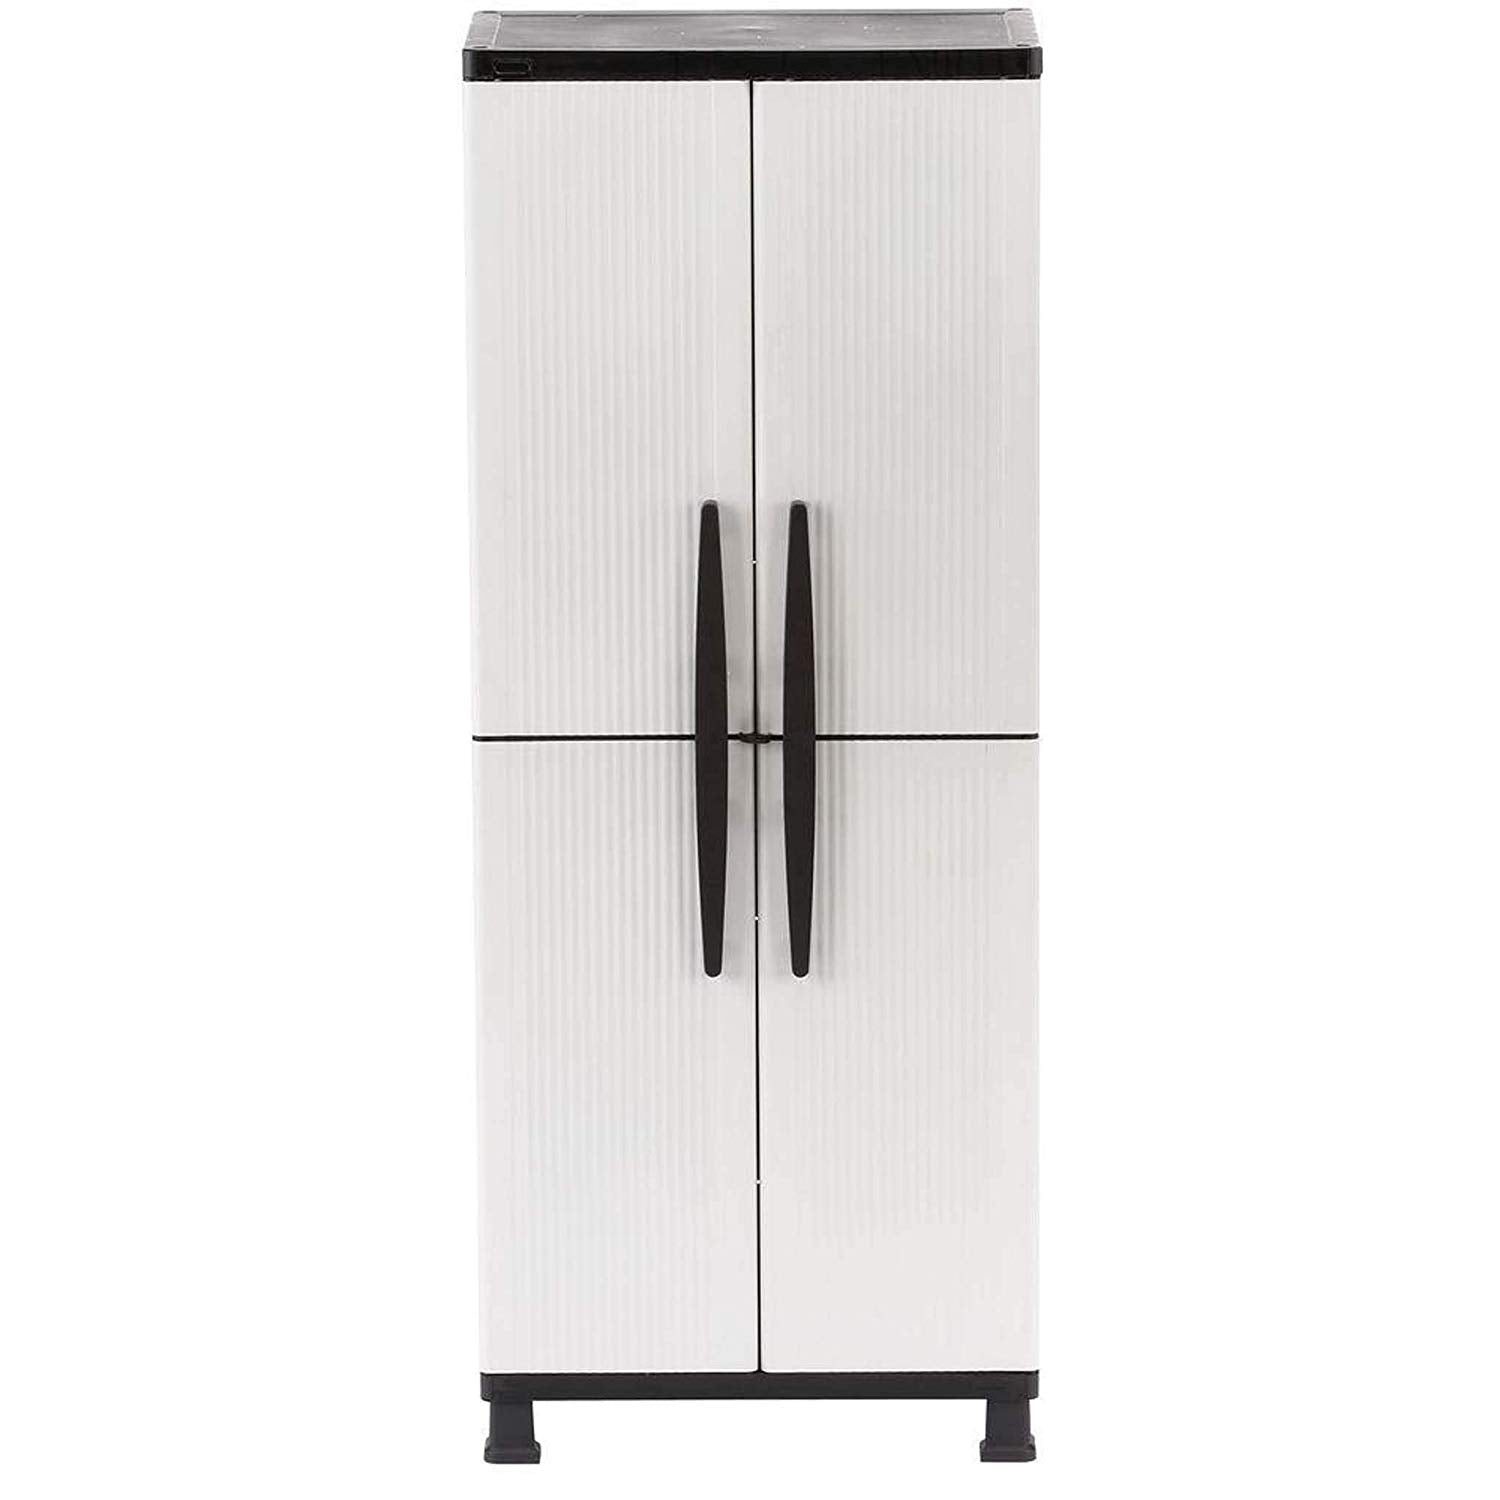 HDX 27 in. W 4-Shelf Plastic Multi-Purpose Tall Cabinet in Gray